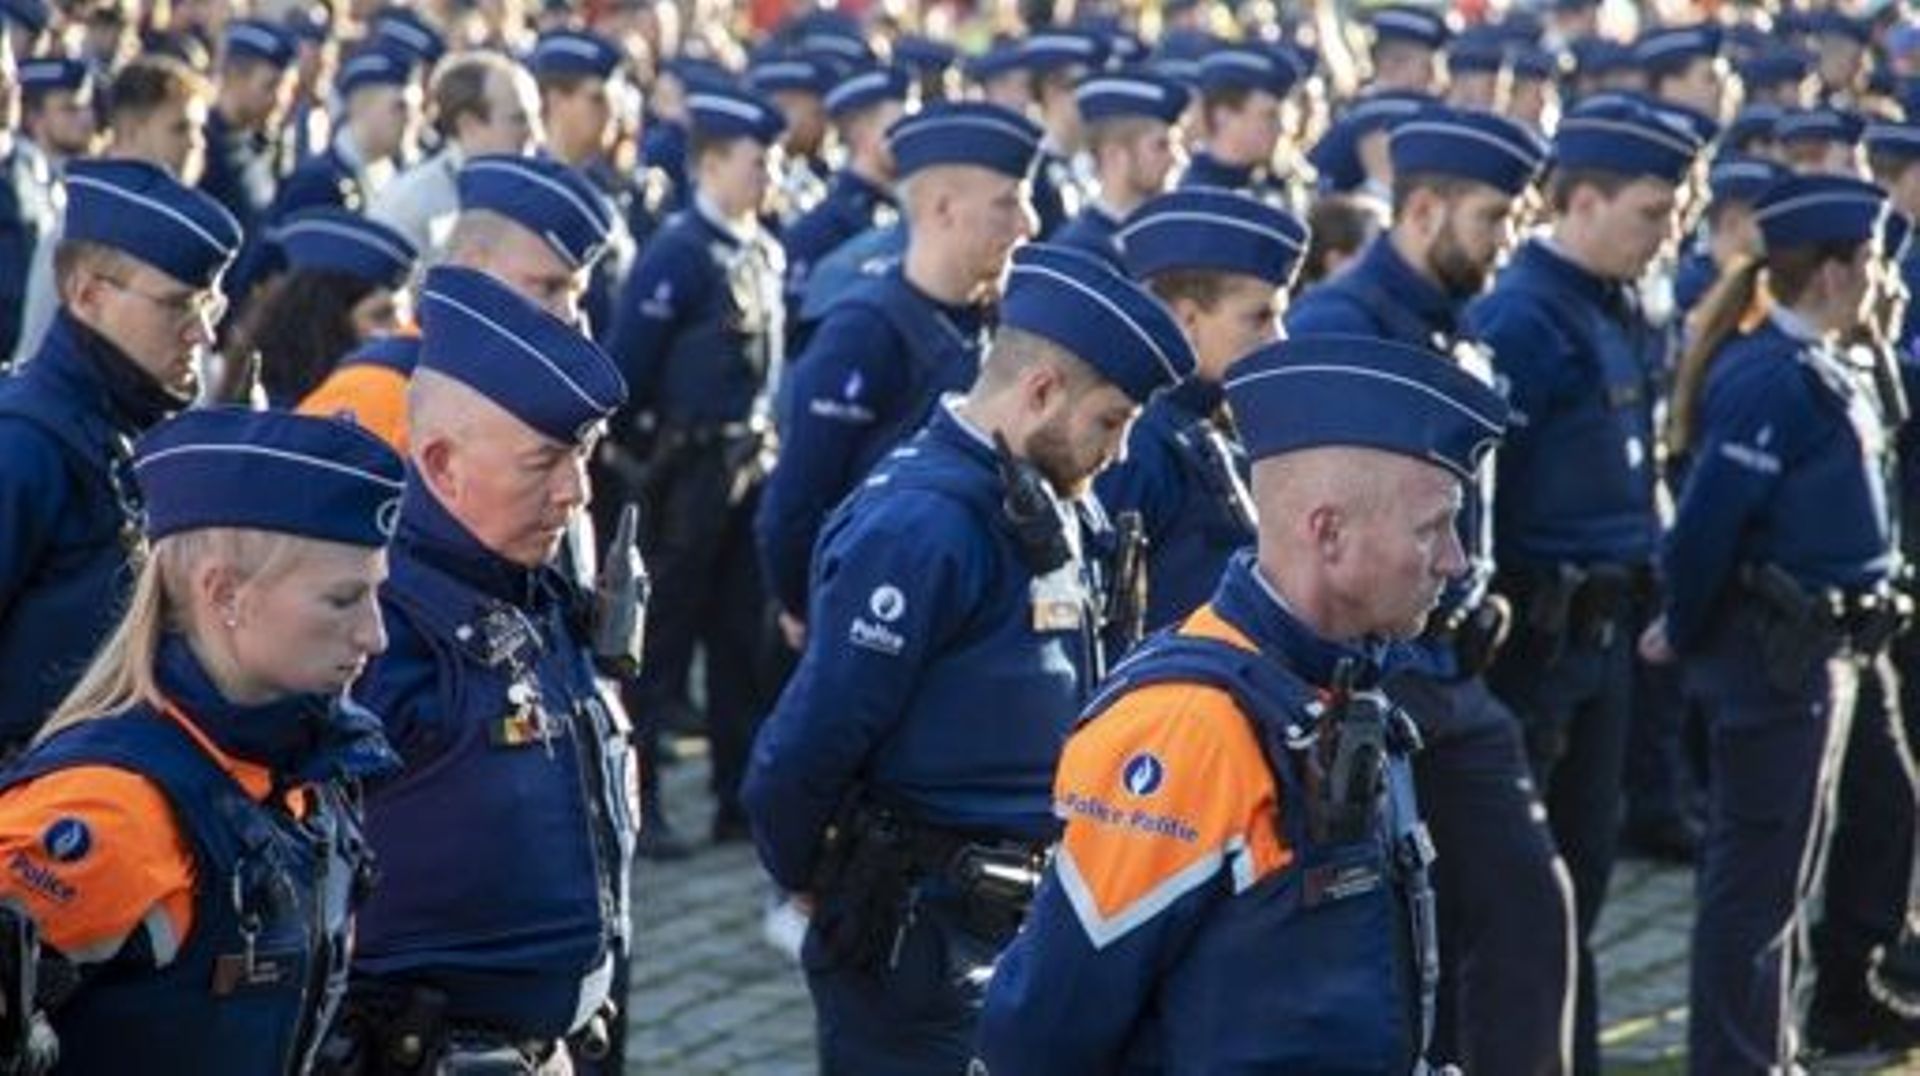 Policier tué à Schaerbeek - Minute de silence nationale et des milliers de policiers aux funérailles de Thomas Monjoie